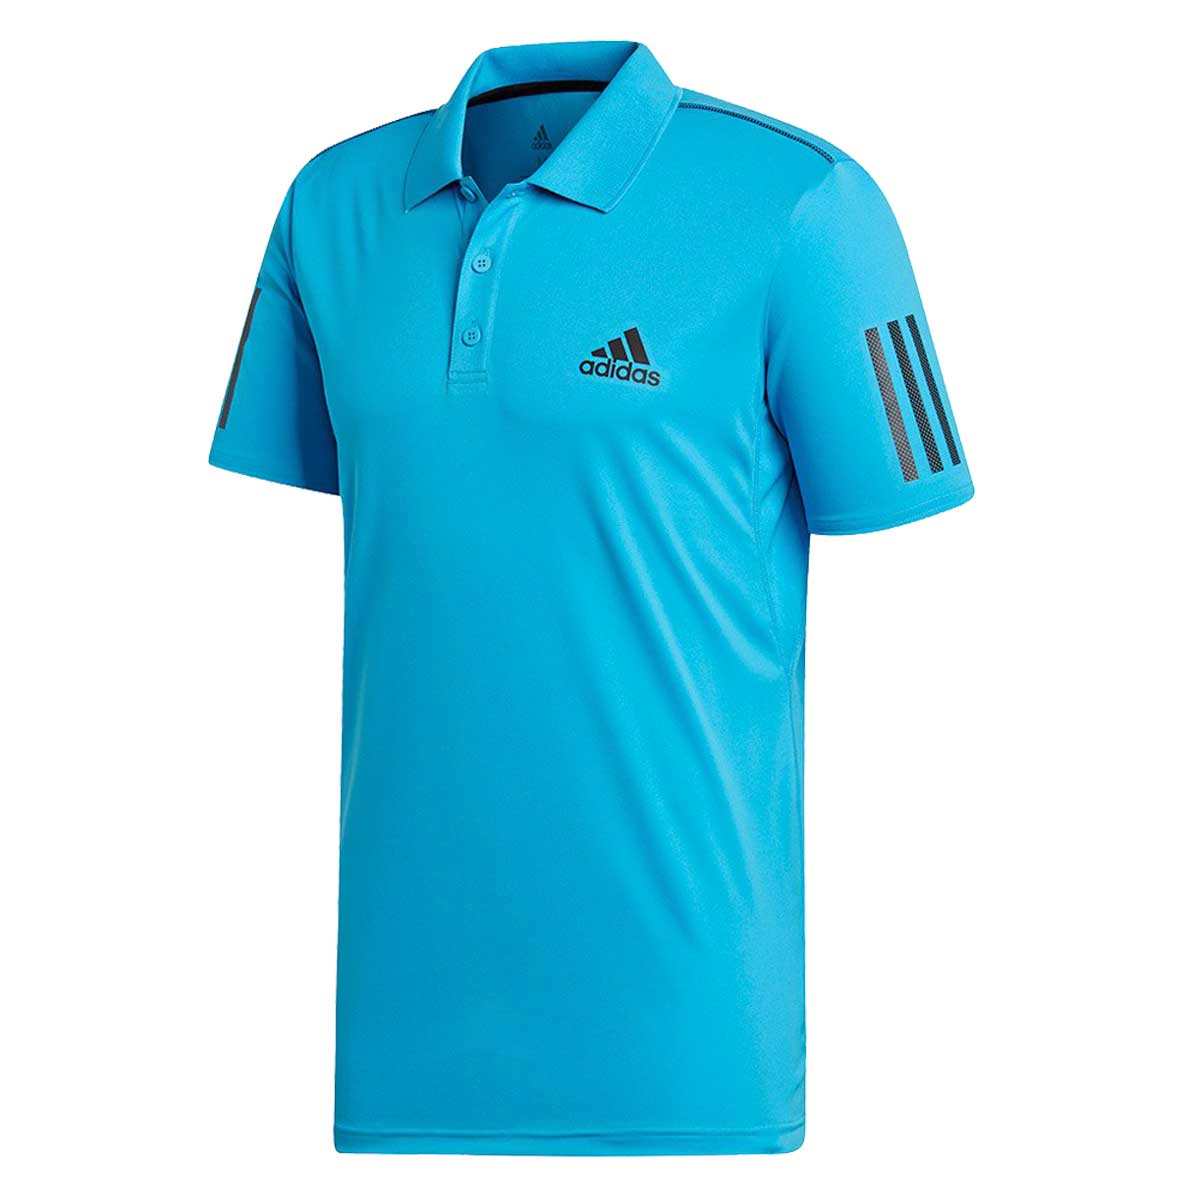 Adidas Tennis Club 3 Stripes Mens Polo T-Shirt (Blue/Black) Online India